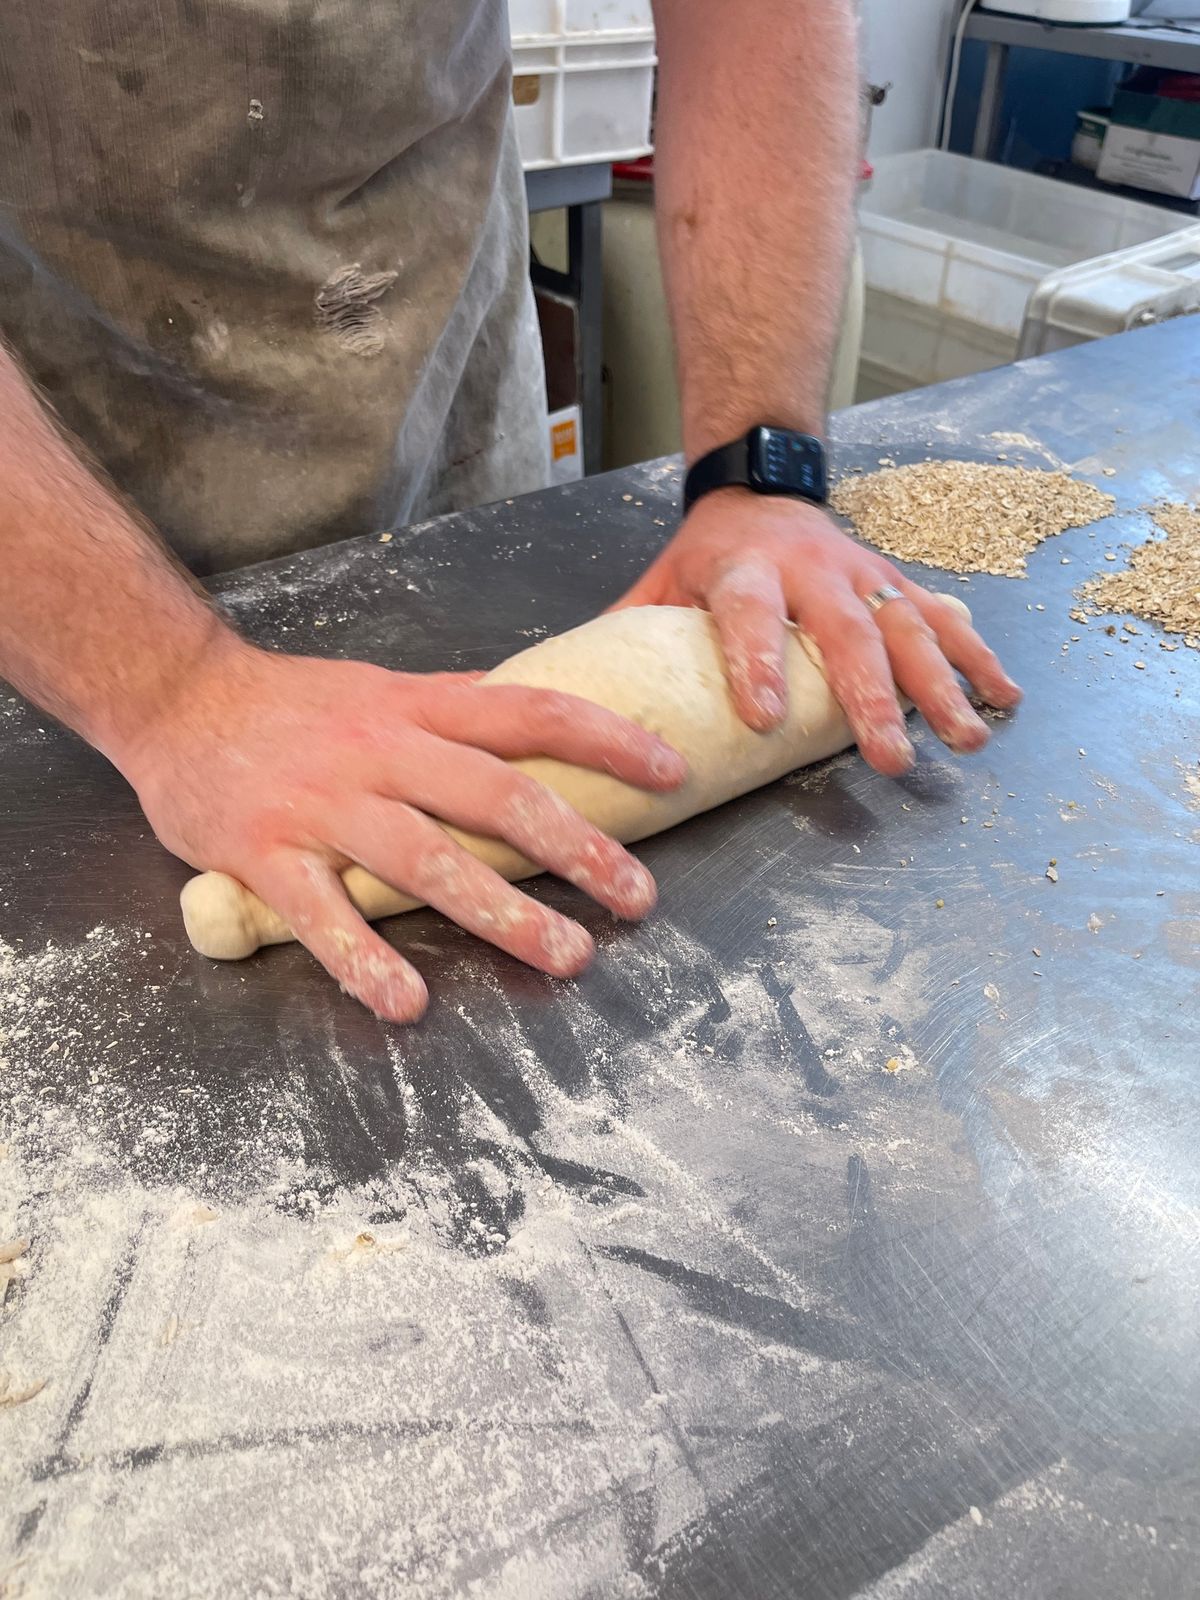 Beginners Bread Making Workshop